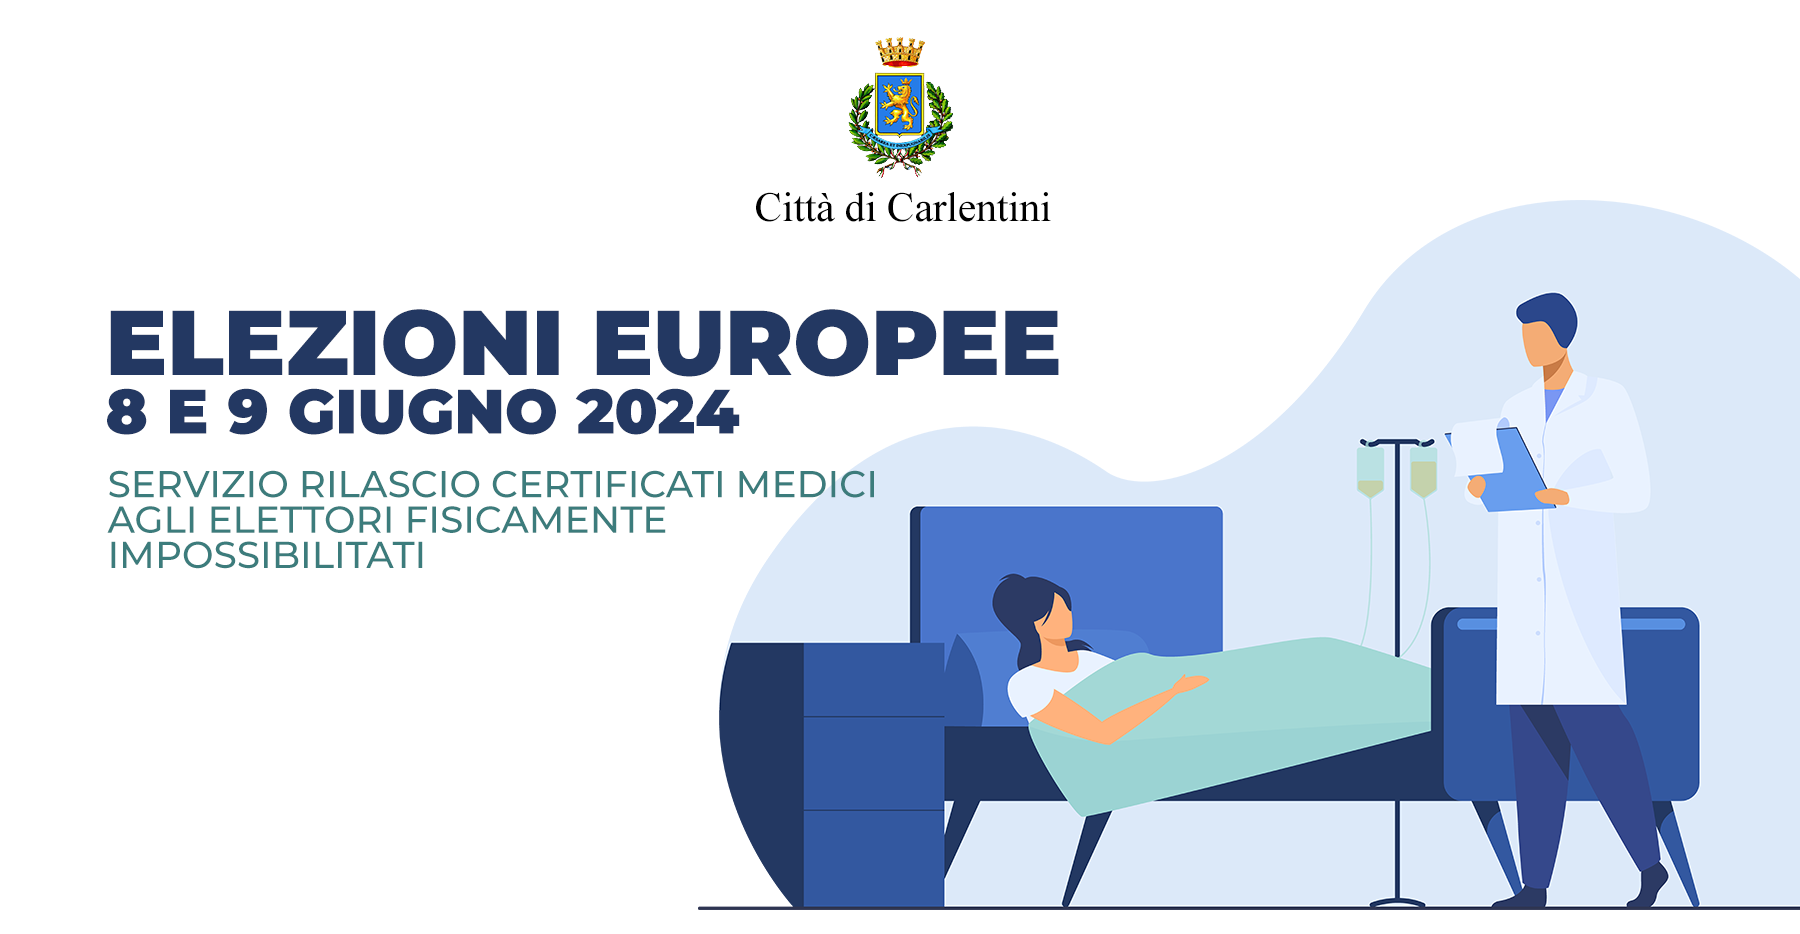 Elezioni europee 2024: servizio di rilascio certificati medici per elettori fisicamente impossibilitati